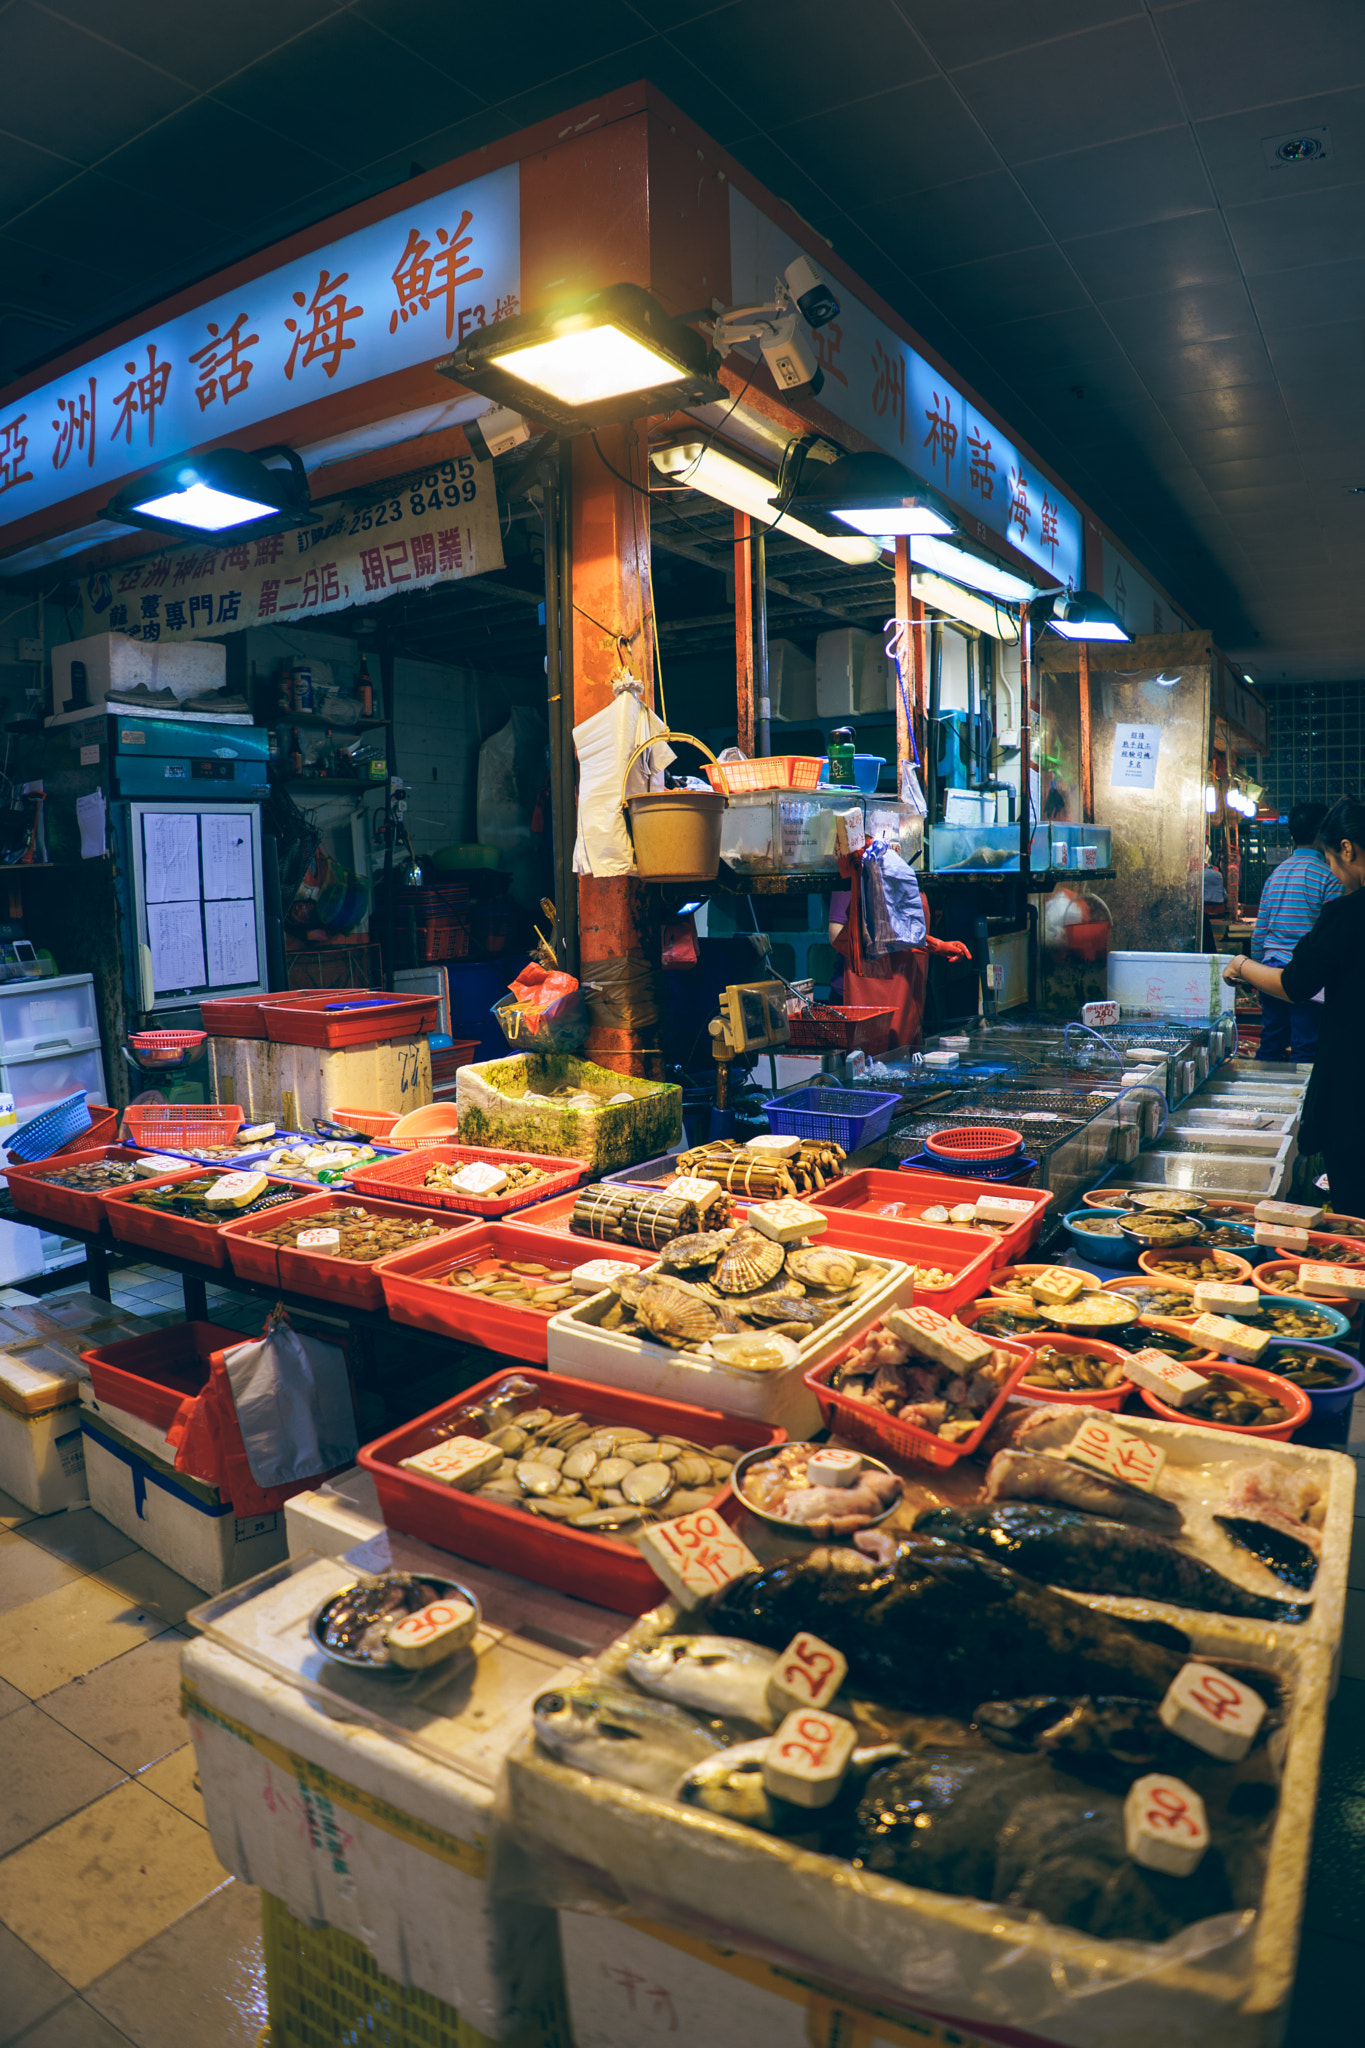 Sony a7 sample photo. Local hong kong fish market photography